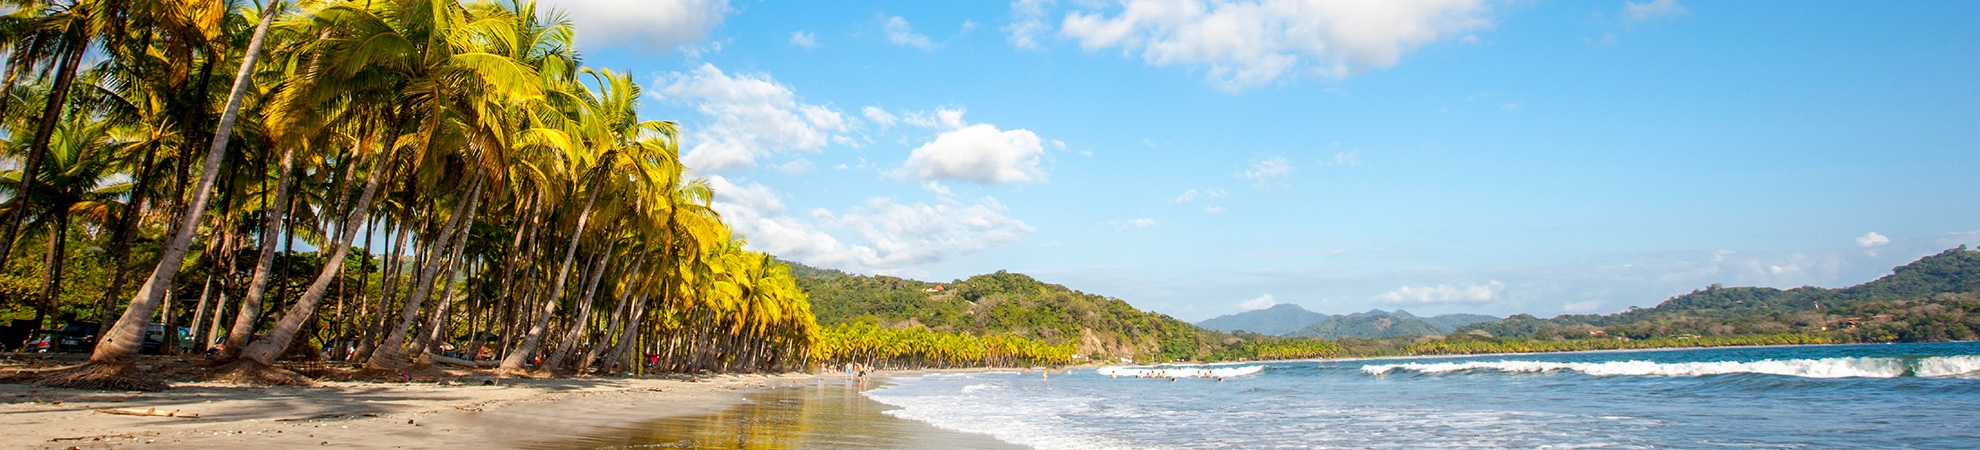 Voyage Costa Rica